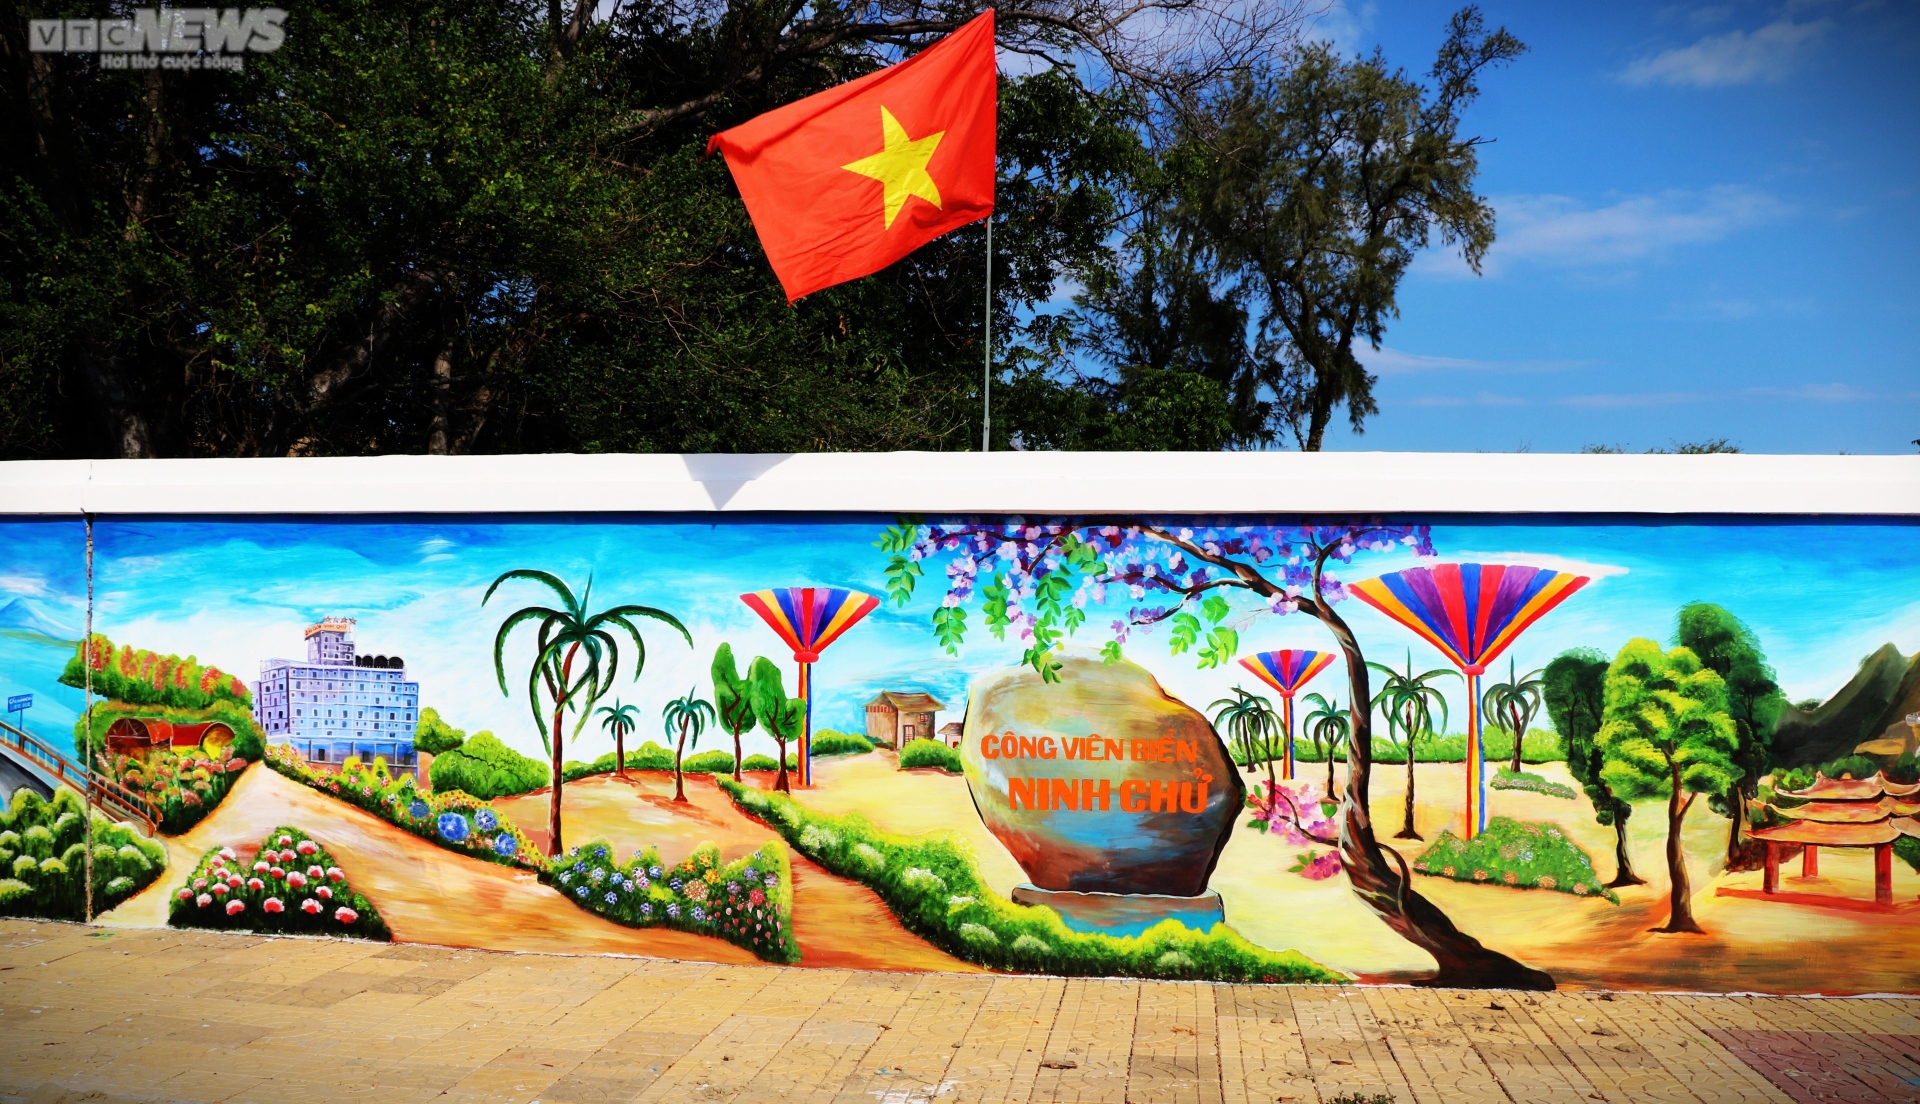 Chiêm ngưỡng bức tường tranh bích họa ven biển Ninh Thuận xác lập kỷ lục Việt Nam - Ảnh 8.